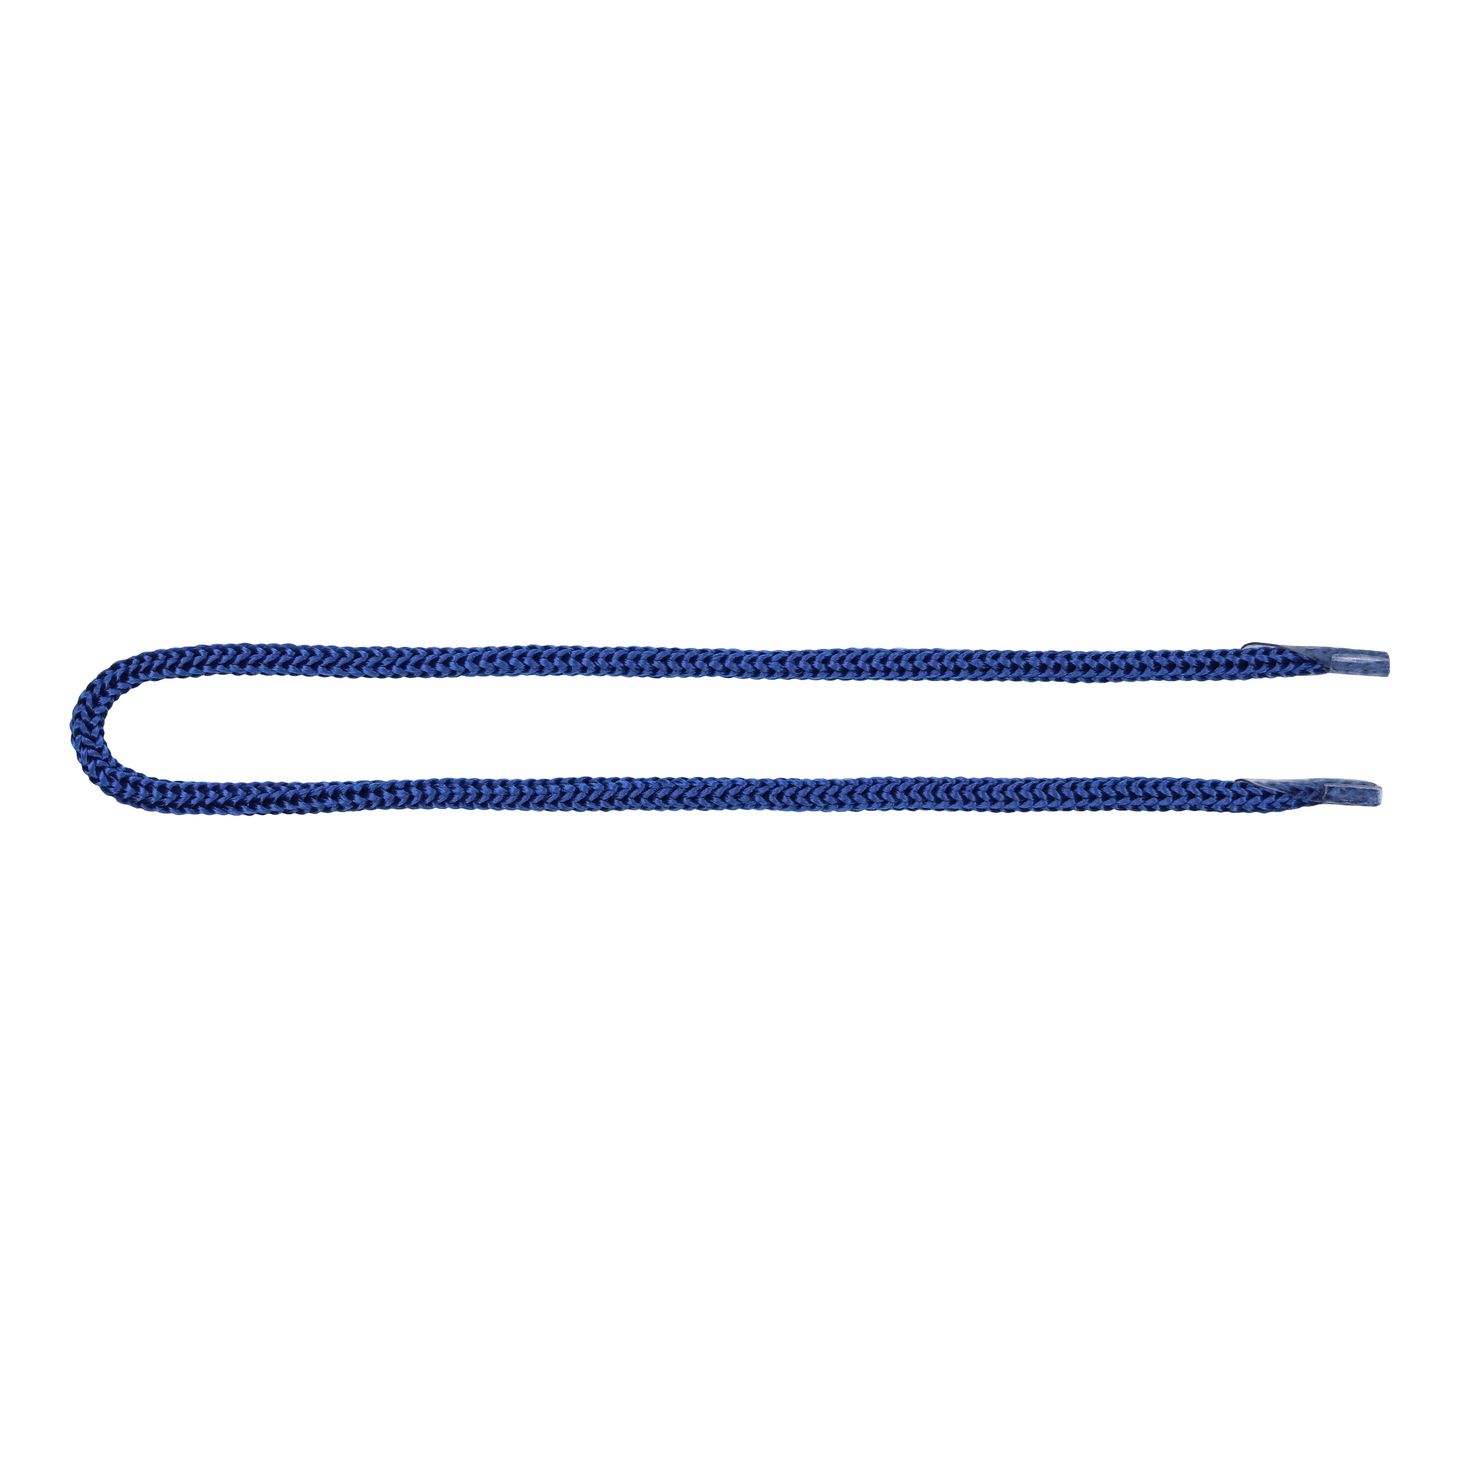 Шнурок для пакетов с крючком арт. 5В511 п/п, диам. 5 мм, дл. 35 см, № 180 ДС синий (уп. 50 пар)